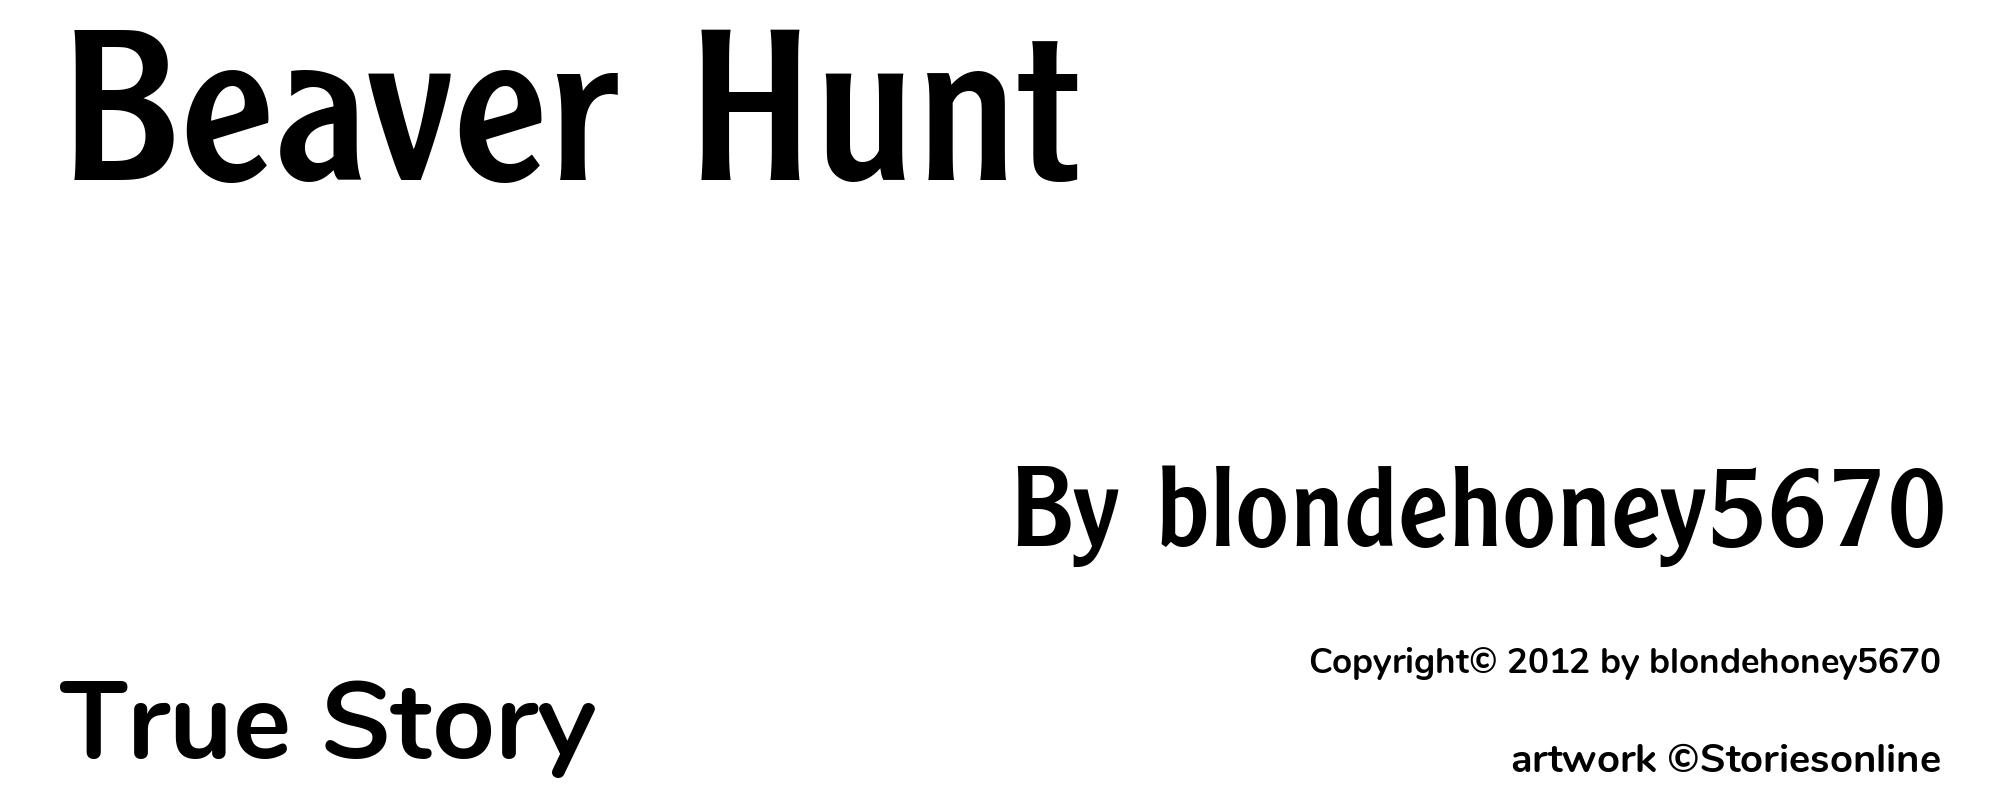 Beaver Hunt - Cover